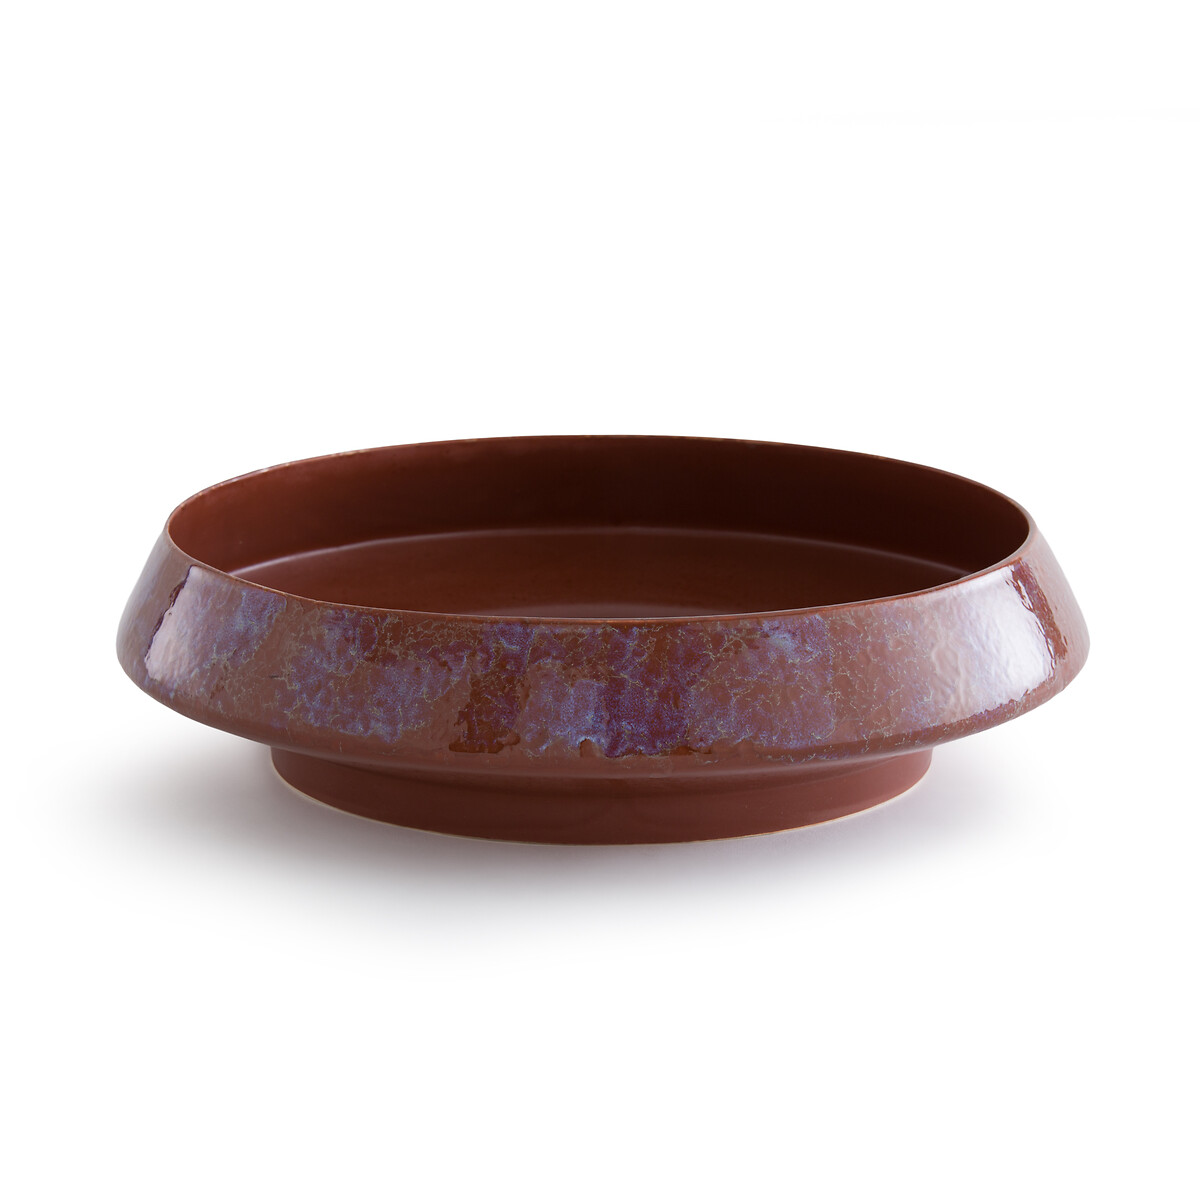 Medine Enamelled Ceramic Bowl